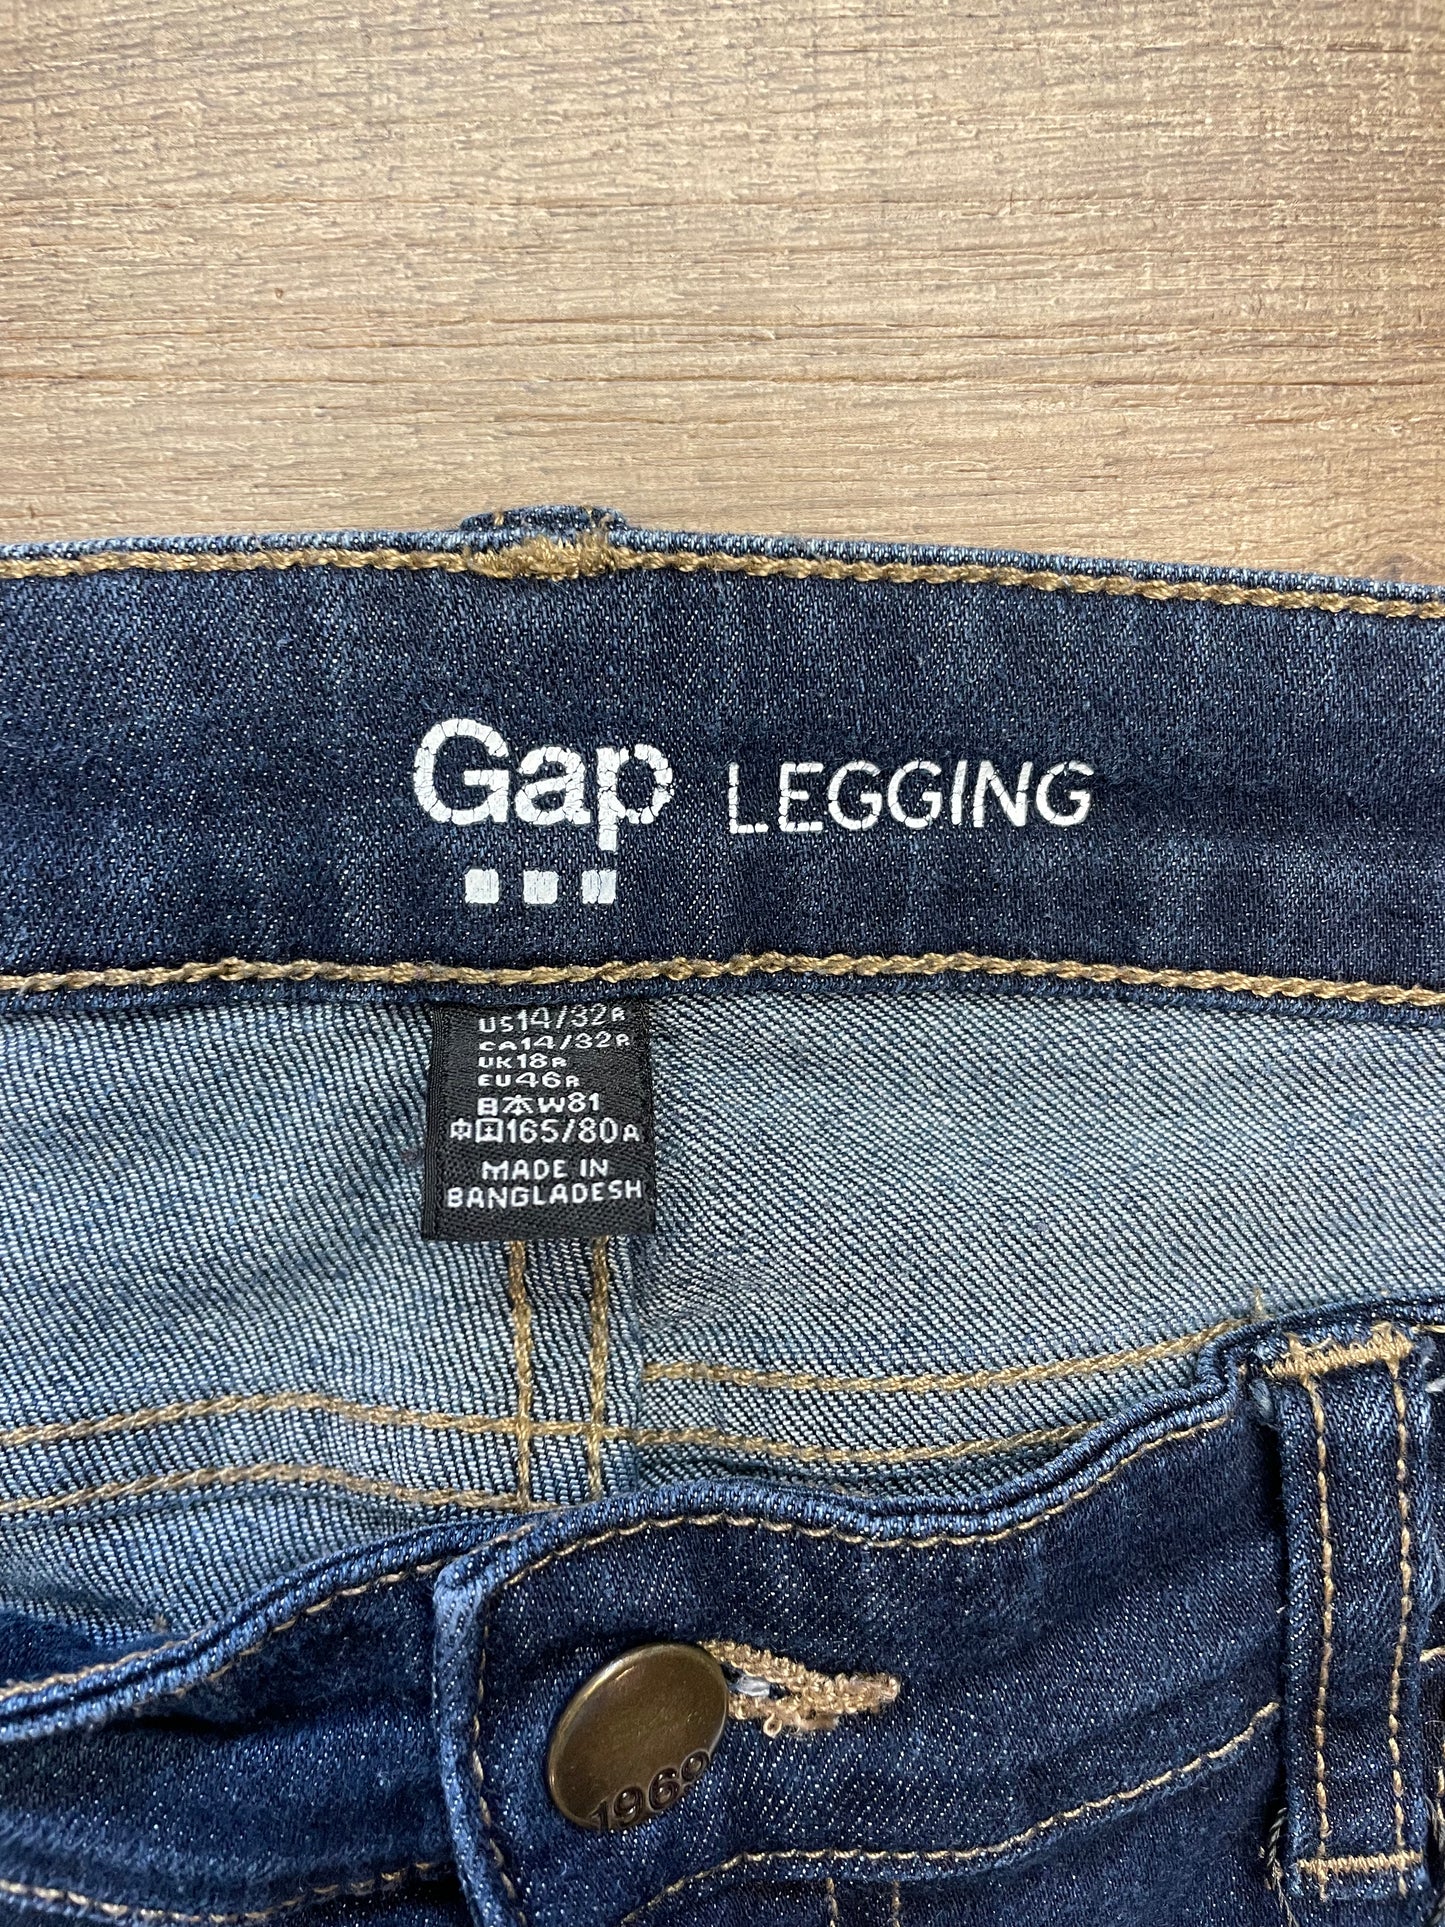 GAP Leggings (32/14)